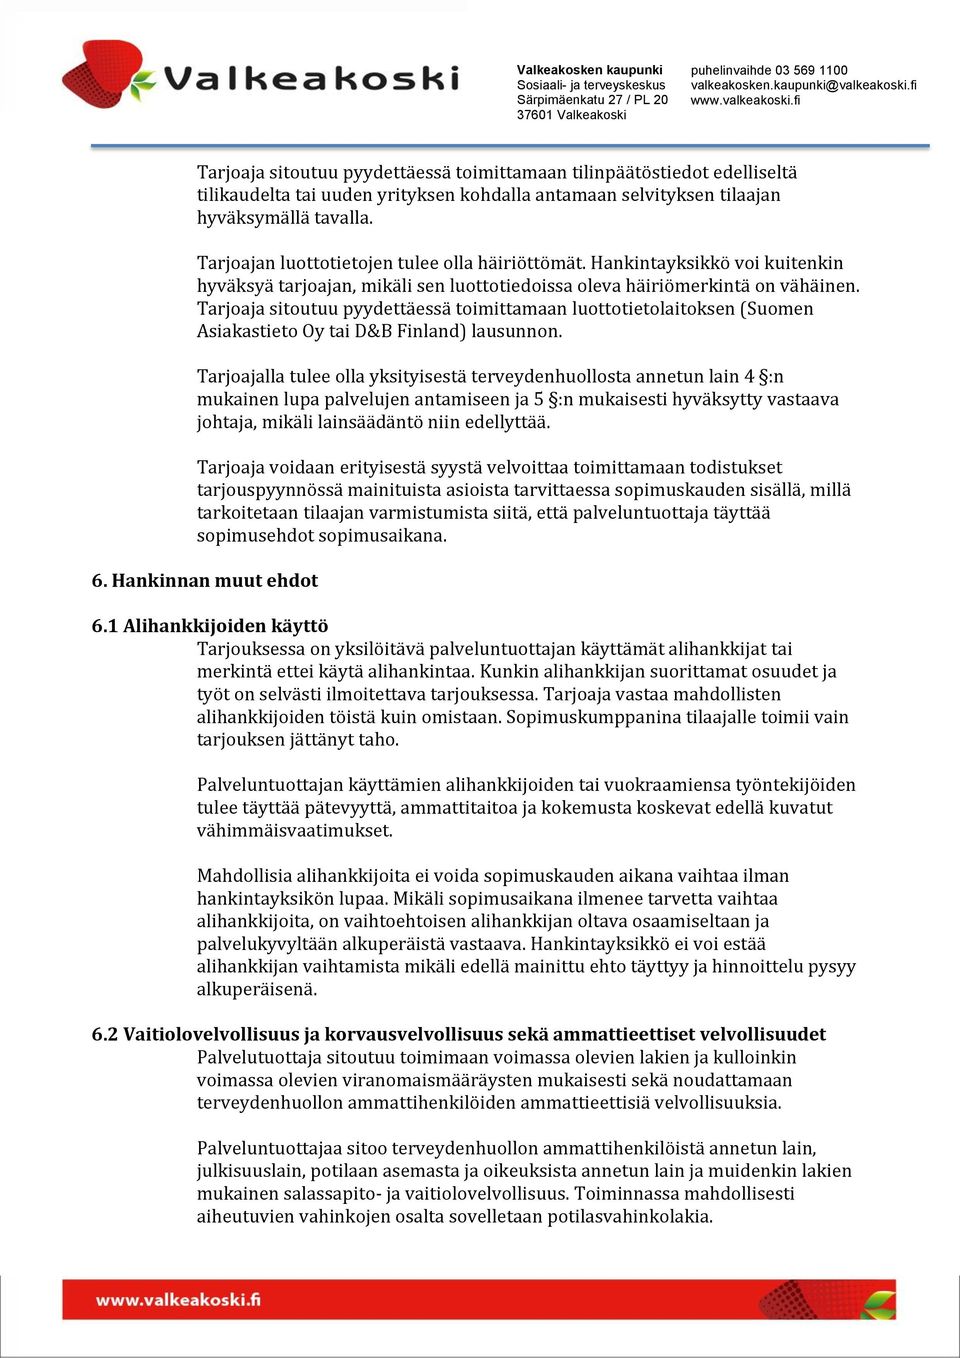 Tarjoaja sitoutuu pyydettäessä toimittamaan luottotietolaitoksen (Suomen Asiakastieto Oy tai D&B Finland) lausunnon.